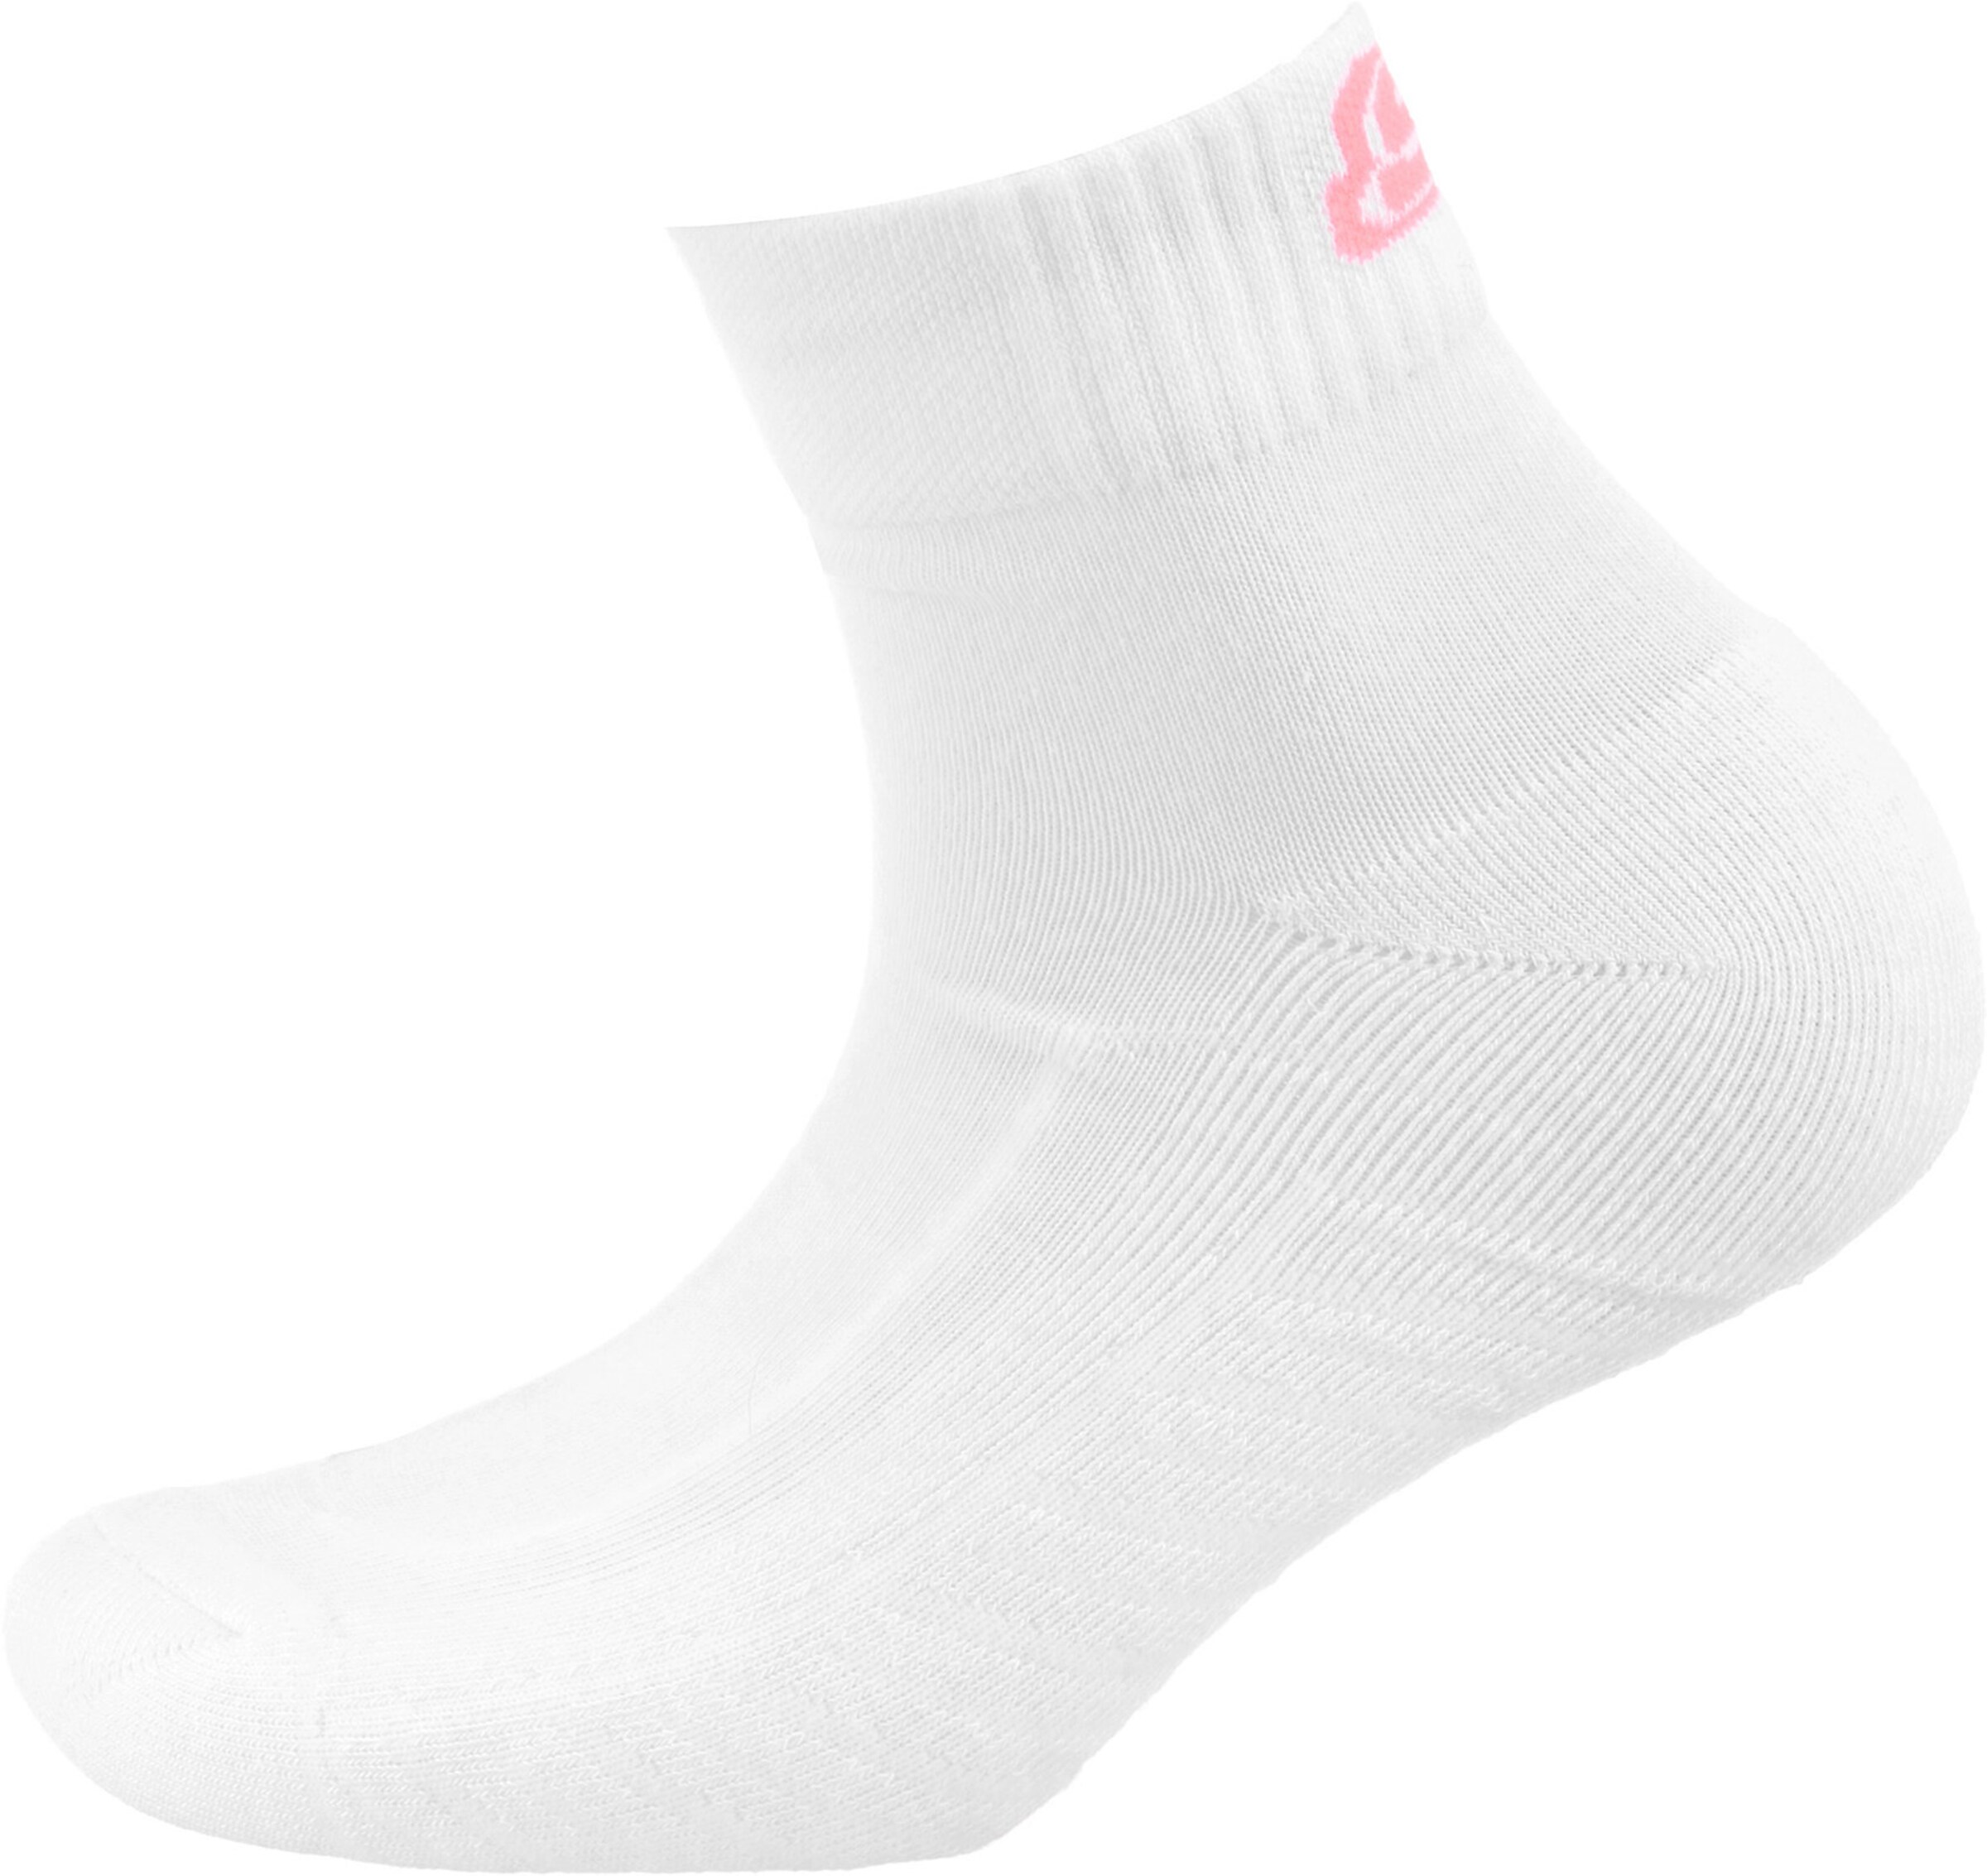 Männer Wäsche SKECHERS Socken in Lachs, Weiß - DM32740